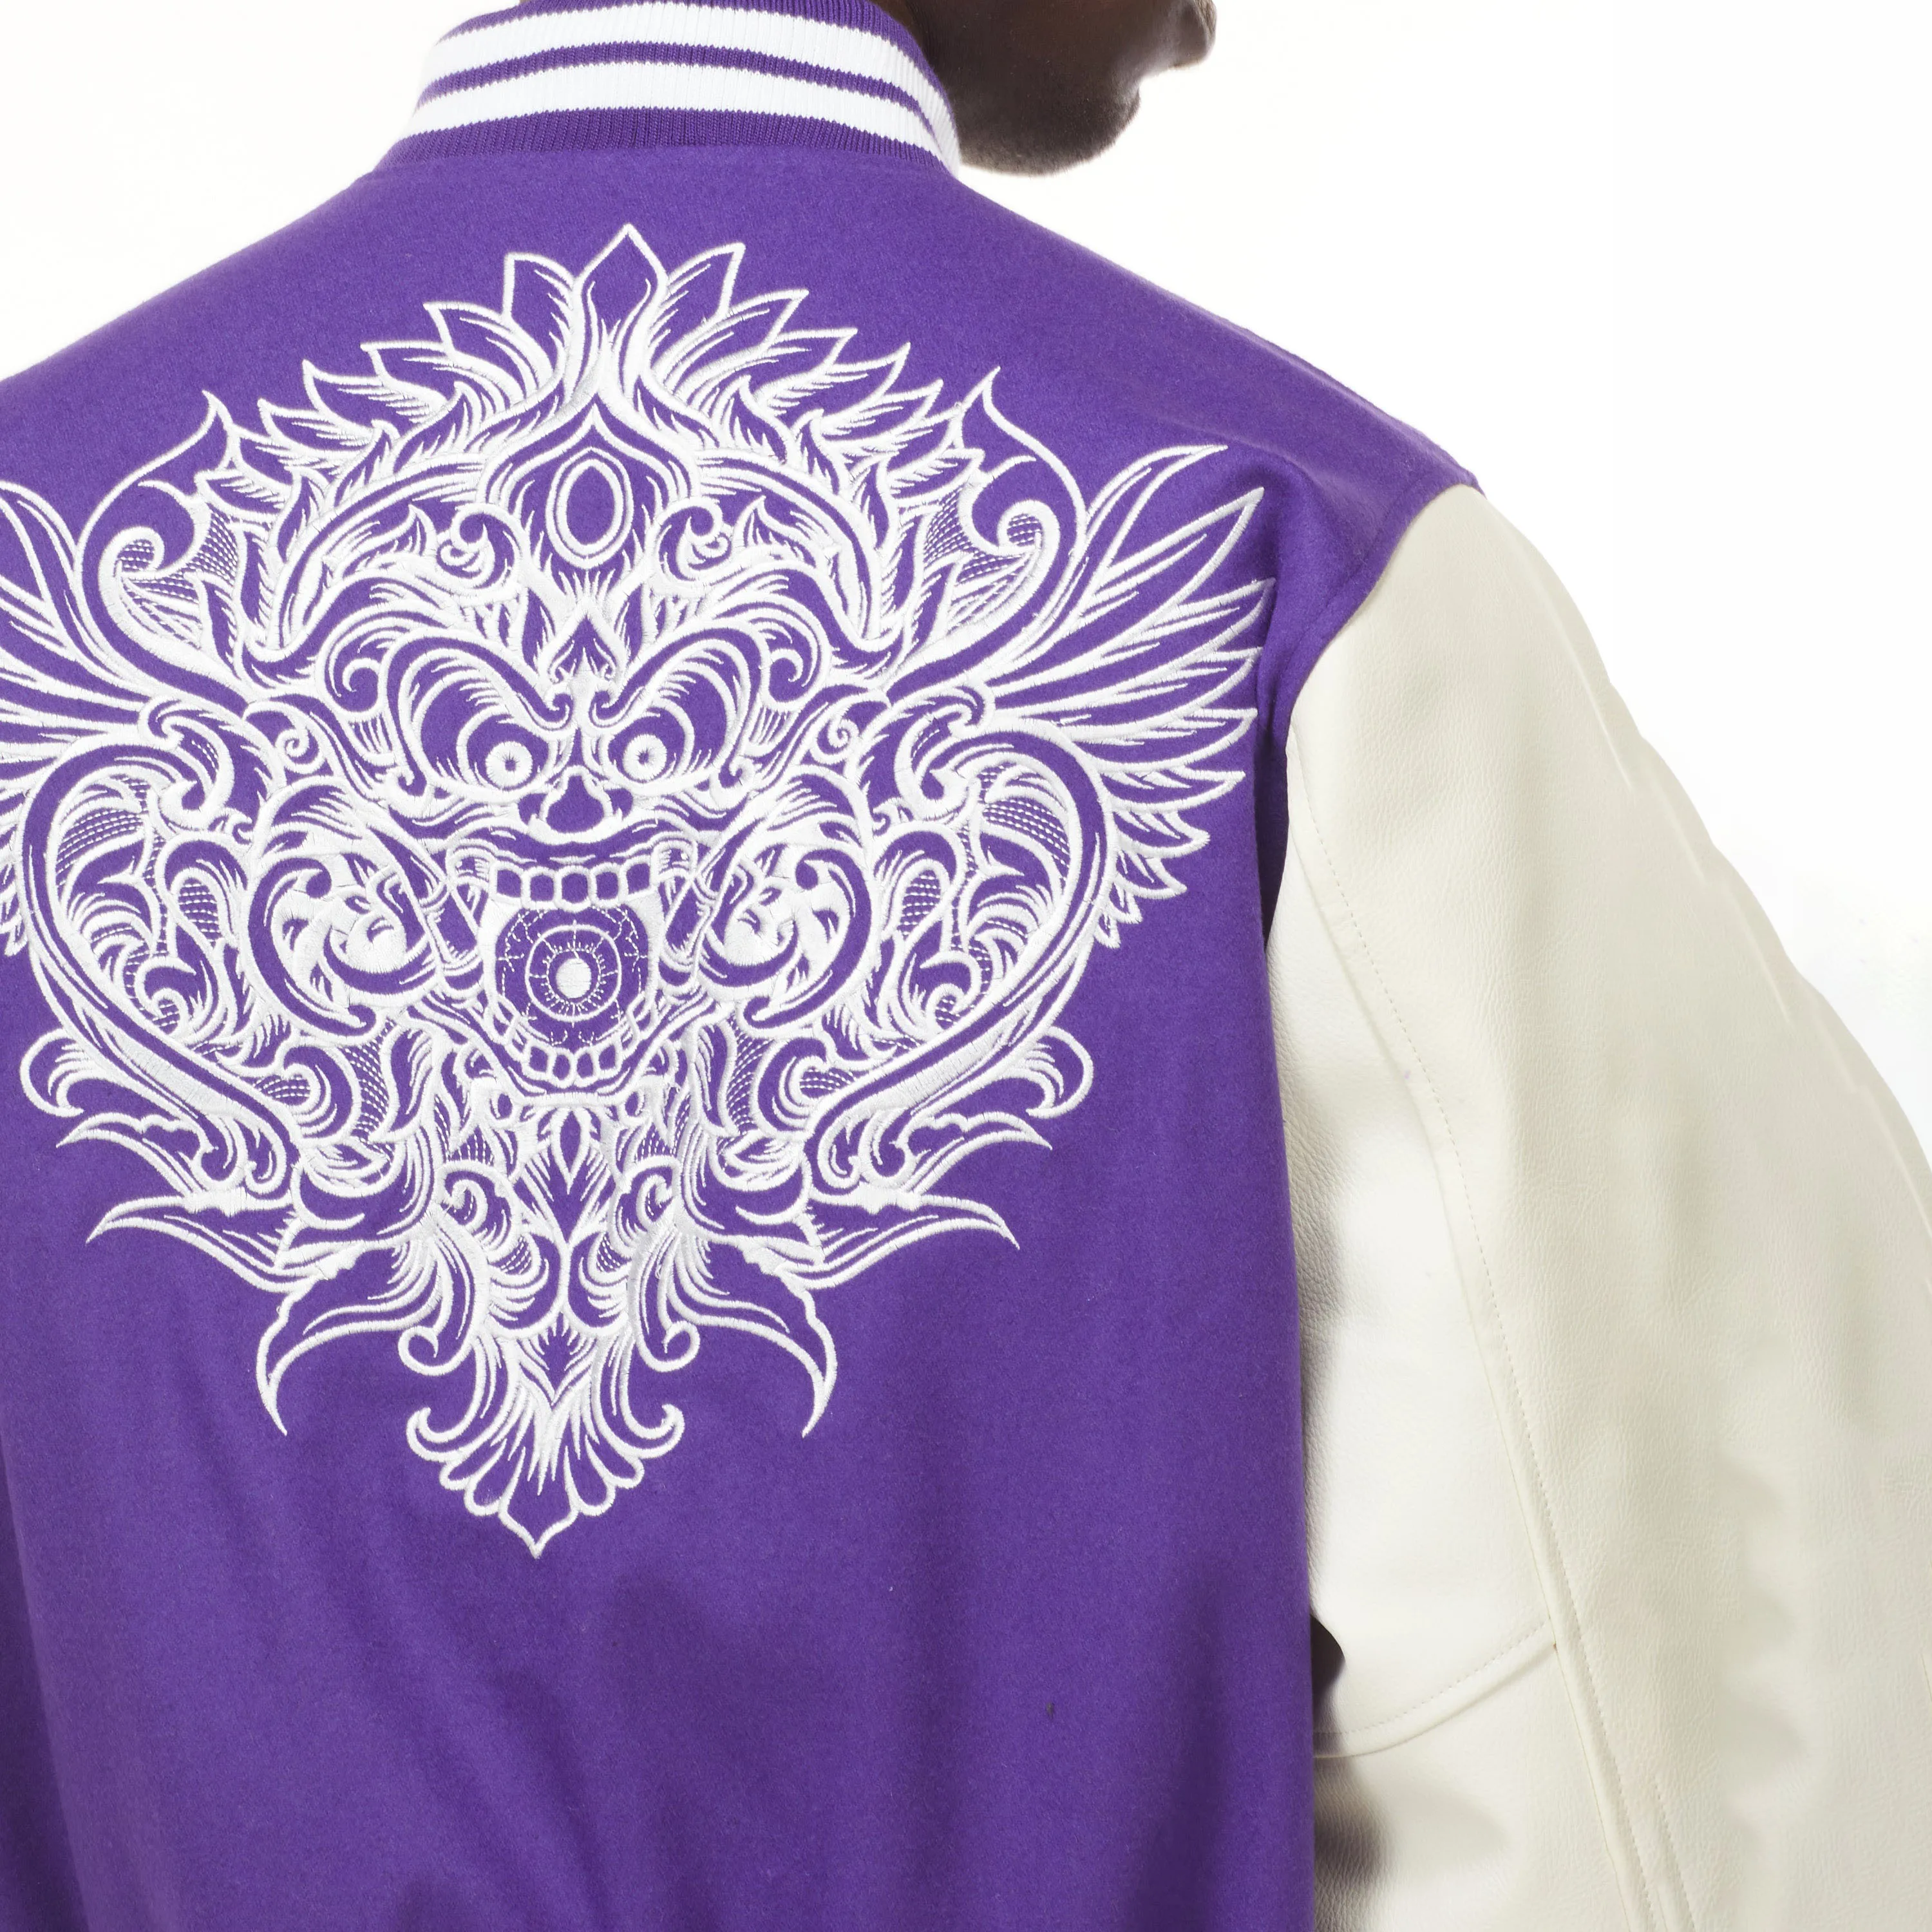 LV Embroidery Logo Imported Polyester TPU Crush Windcheater Varsity Jacket